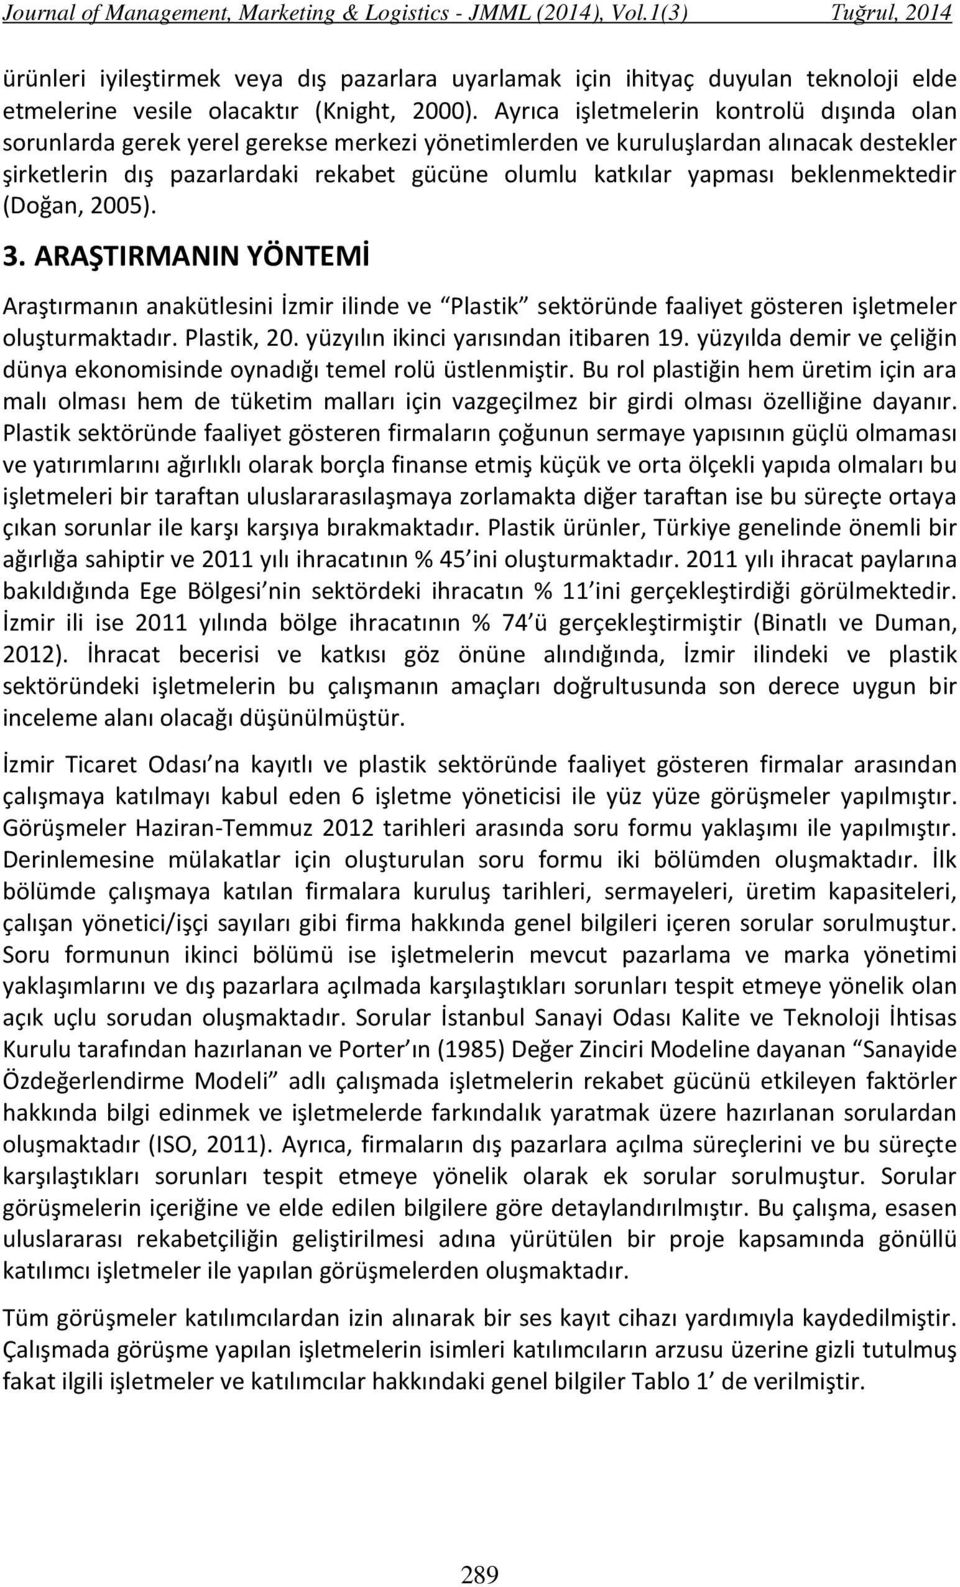 beklenmektedir (Doğan, 2005). 3. ARAŞTIRMANIN YÖNTEMİ Araştırmanın anakütlesini İzmir ilinde ve Plastik sektöründe faaliyet gösteren işletmeler oluşturmaktadır. Plastik, 20.